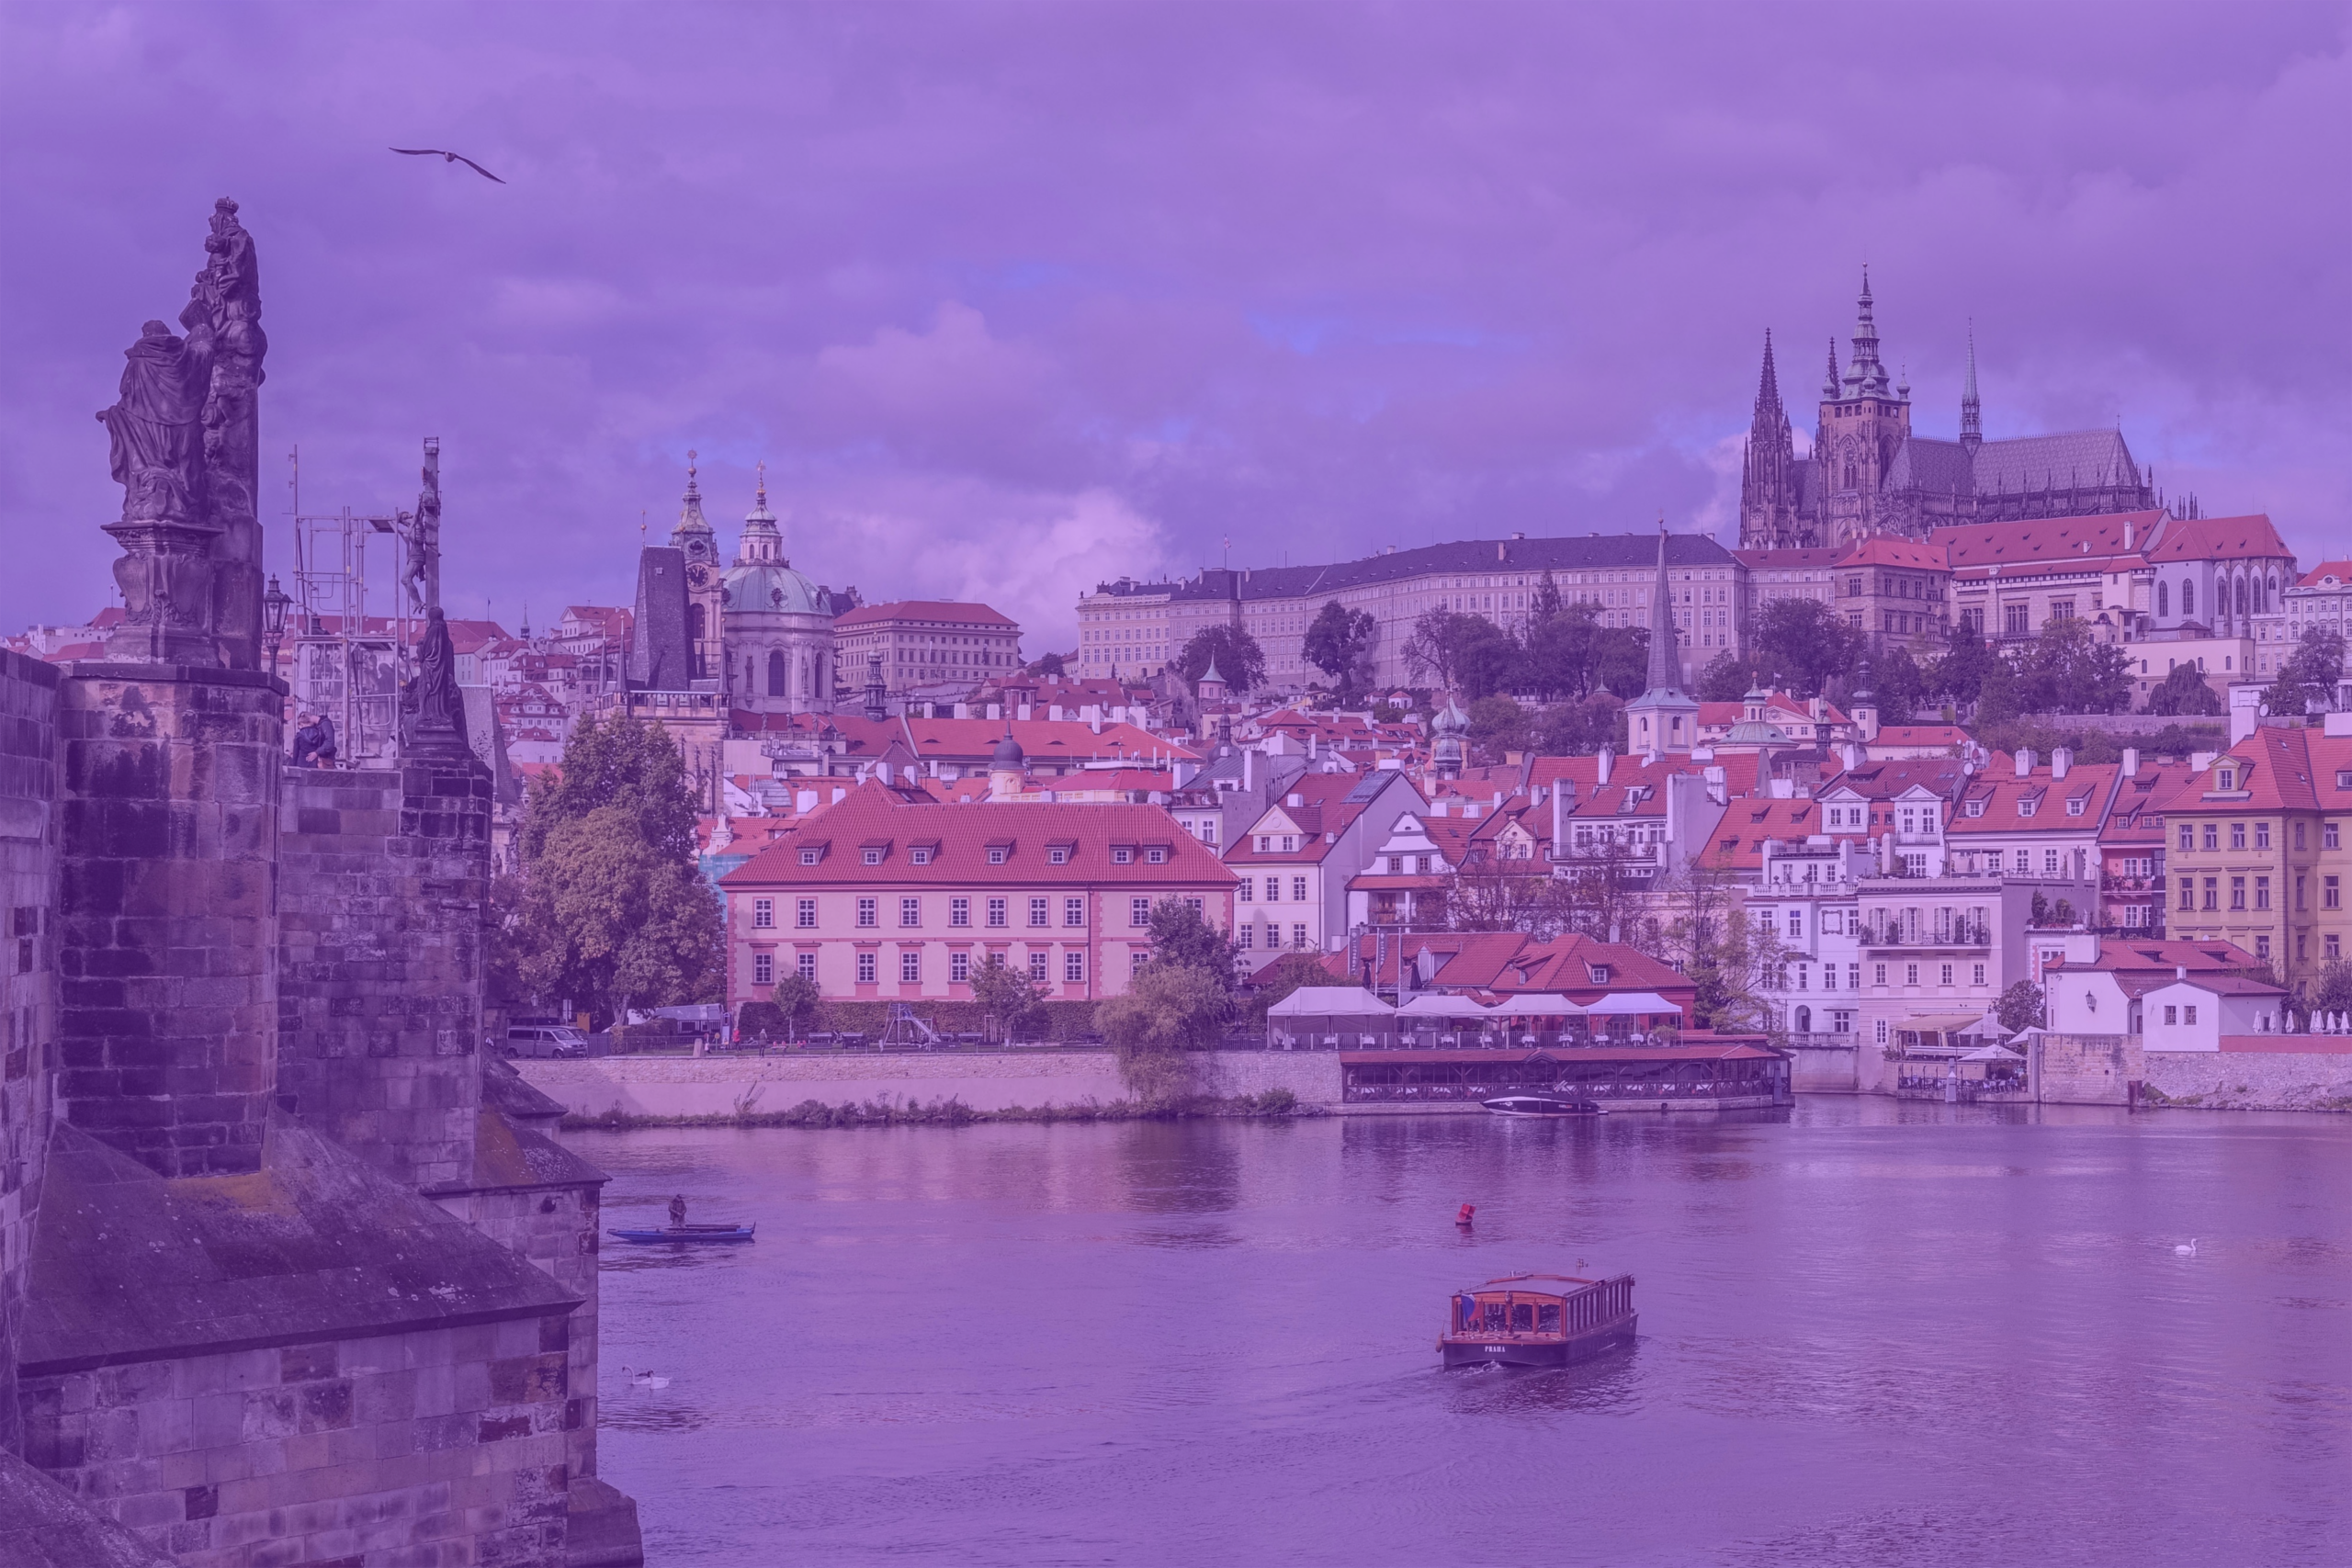 Photo: "Prague - Vue du château depuis le Pont Charles et la Vltava", by Bengt Nyman licensed under CC BY 2.0. Hue modified from the original